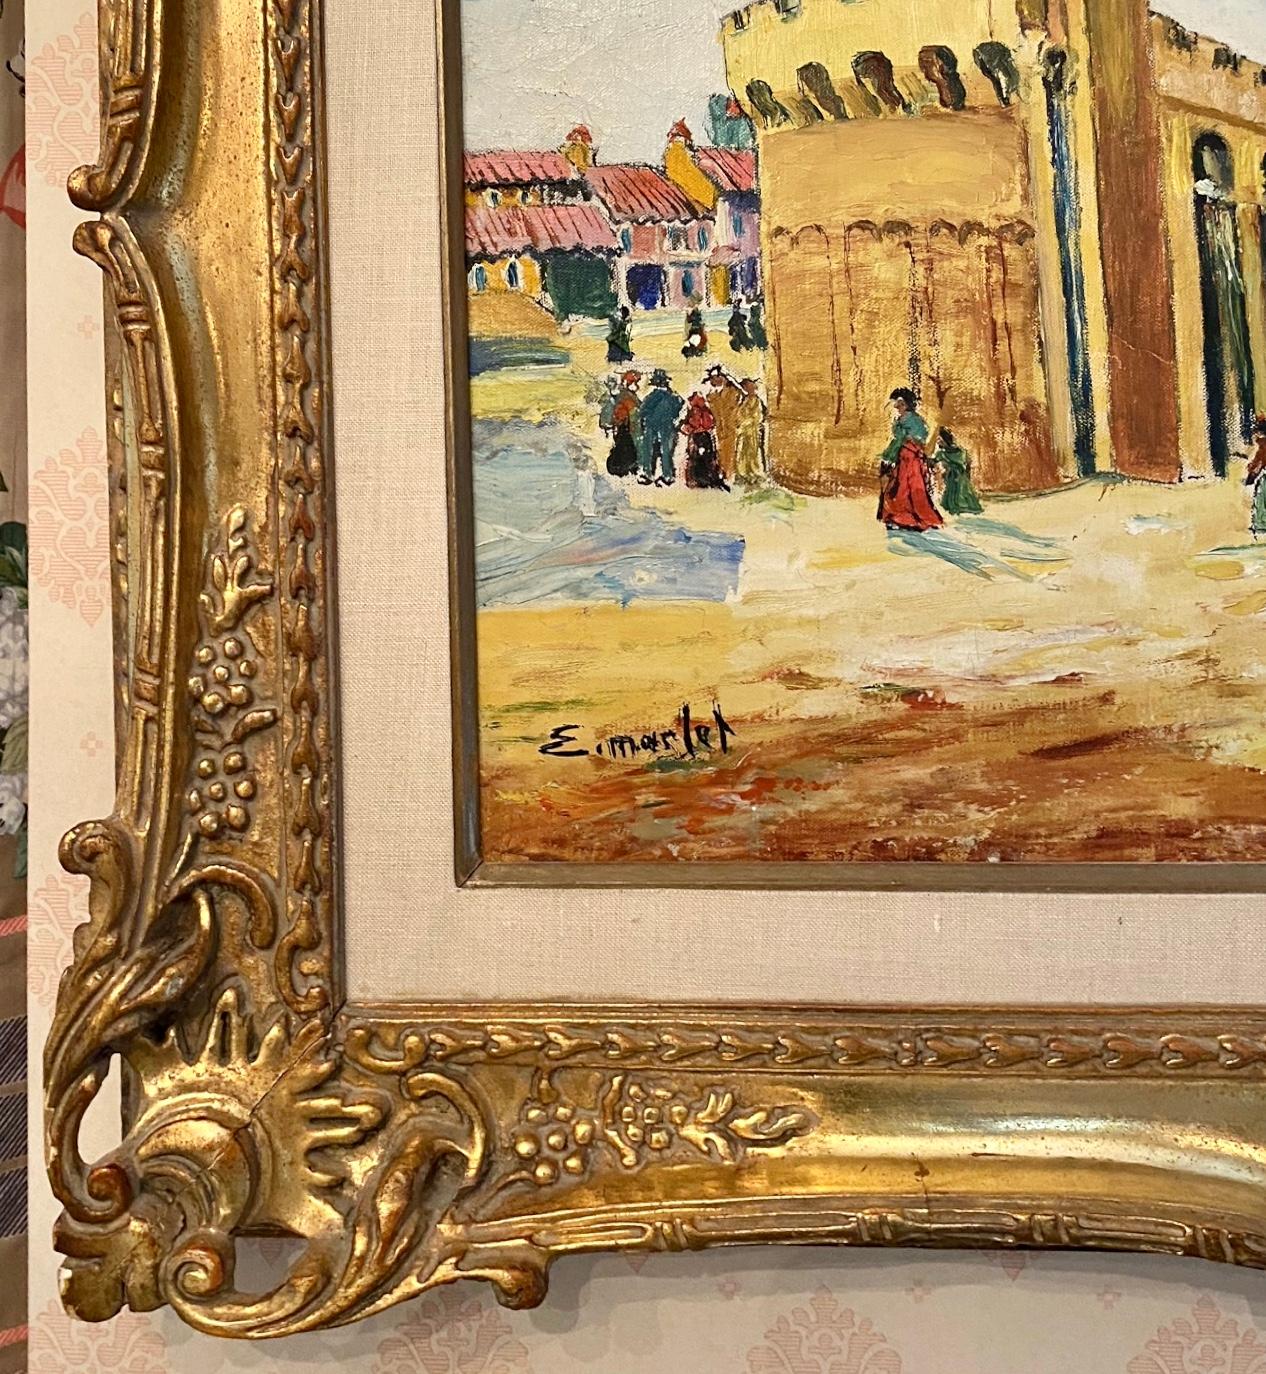 Öl auf Leinwand, unten links signiert.
Elisee Maclet (1881-1962) Sehr gut gelistete französische Künstlerin. Studierte in Paris und wurde von vielen berühmten französischen Künstlern zu Beginn des 20. Jahrhunderts beeinflusst. 
Das Werk misst 17